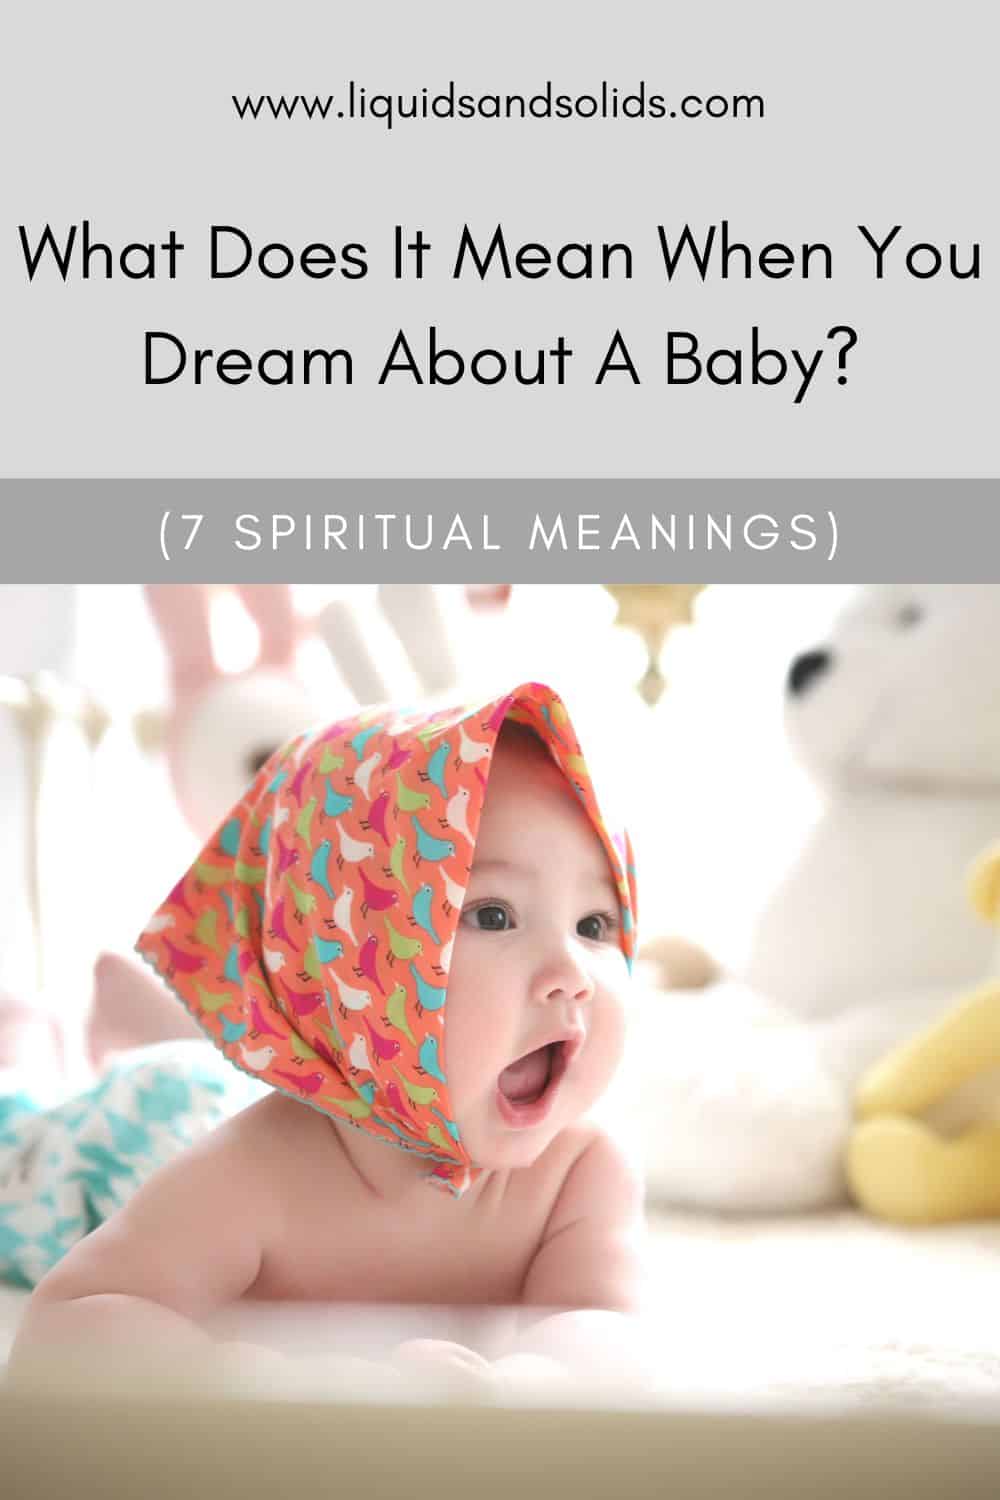  ماذا يعني عندما تحلم بطفل؟ (7 معاني روحية)